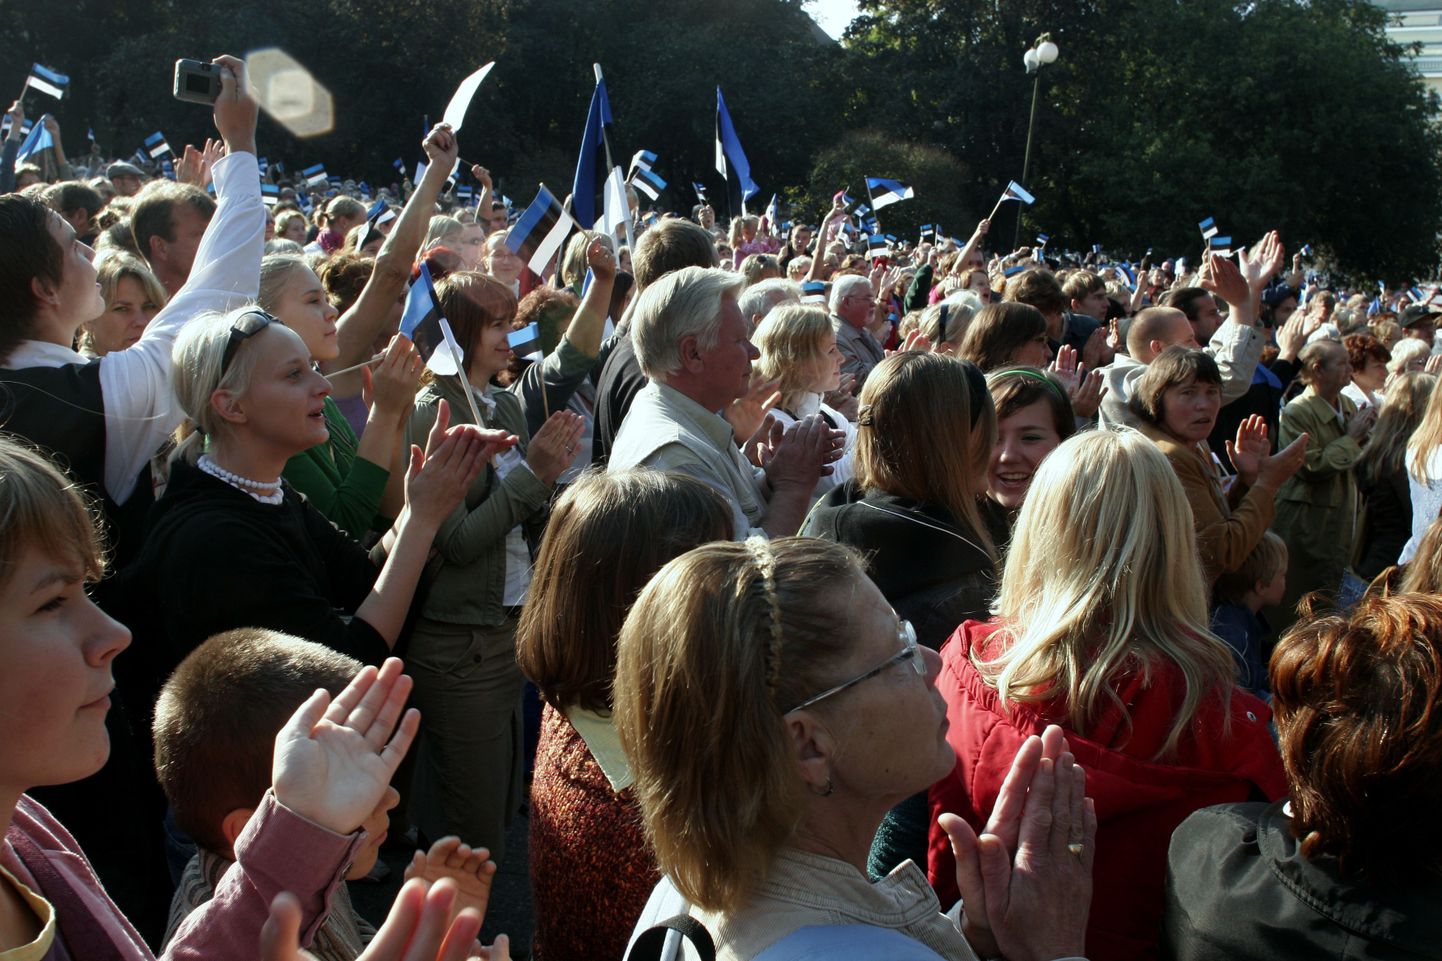 Milline idee sütitaks Eesti inimesed, et riigikokku võiks jõuda keegi uus?